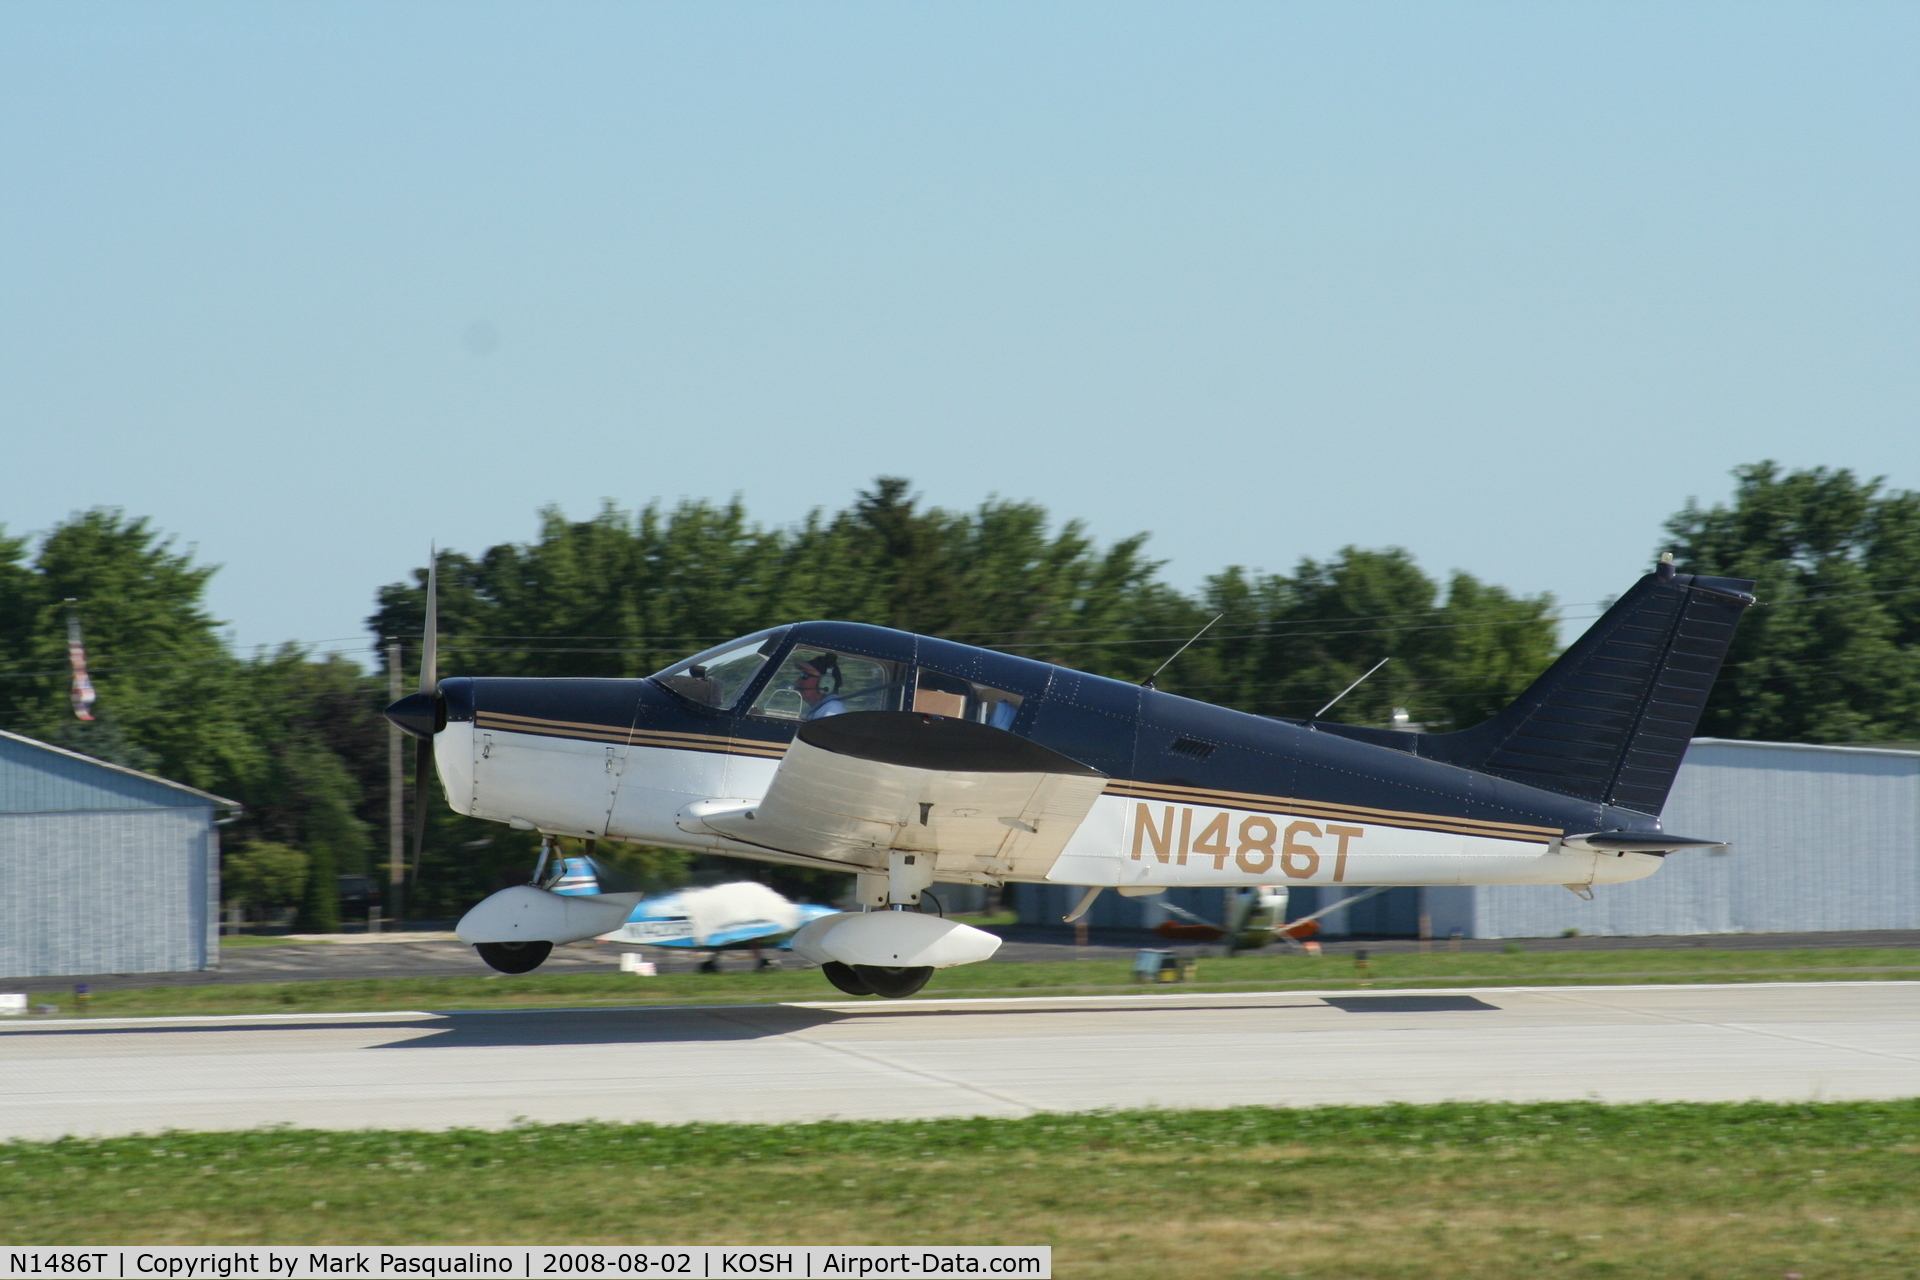 N1486T, 1972 Piper PA-28-140 C/N 28-7225533, Piper PA-28-140